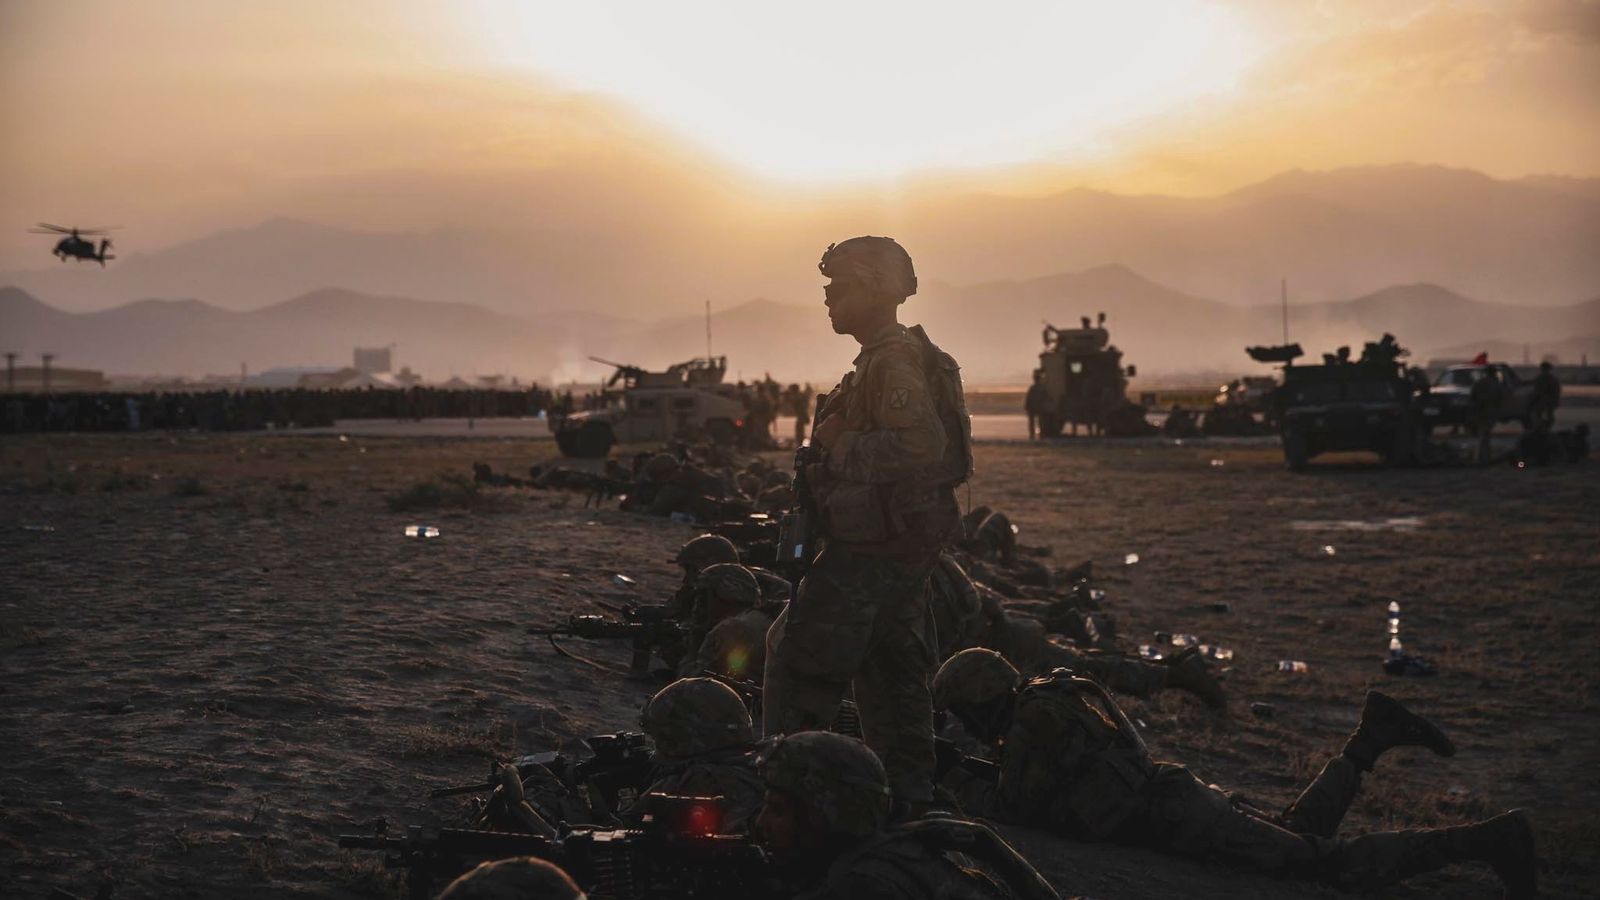 Afghanistan: General David Petraeus raises prospect of Western troops returning